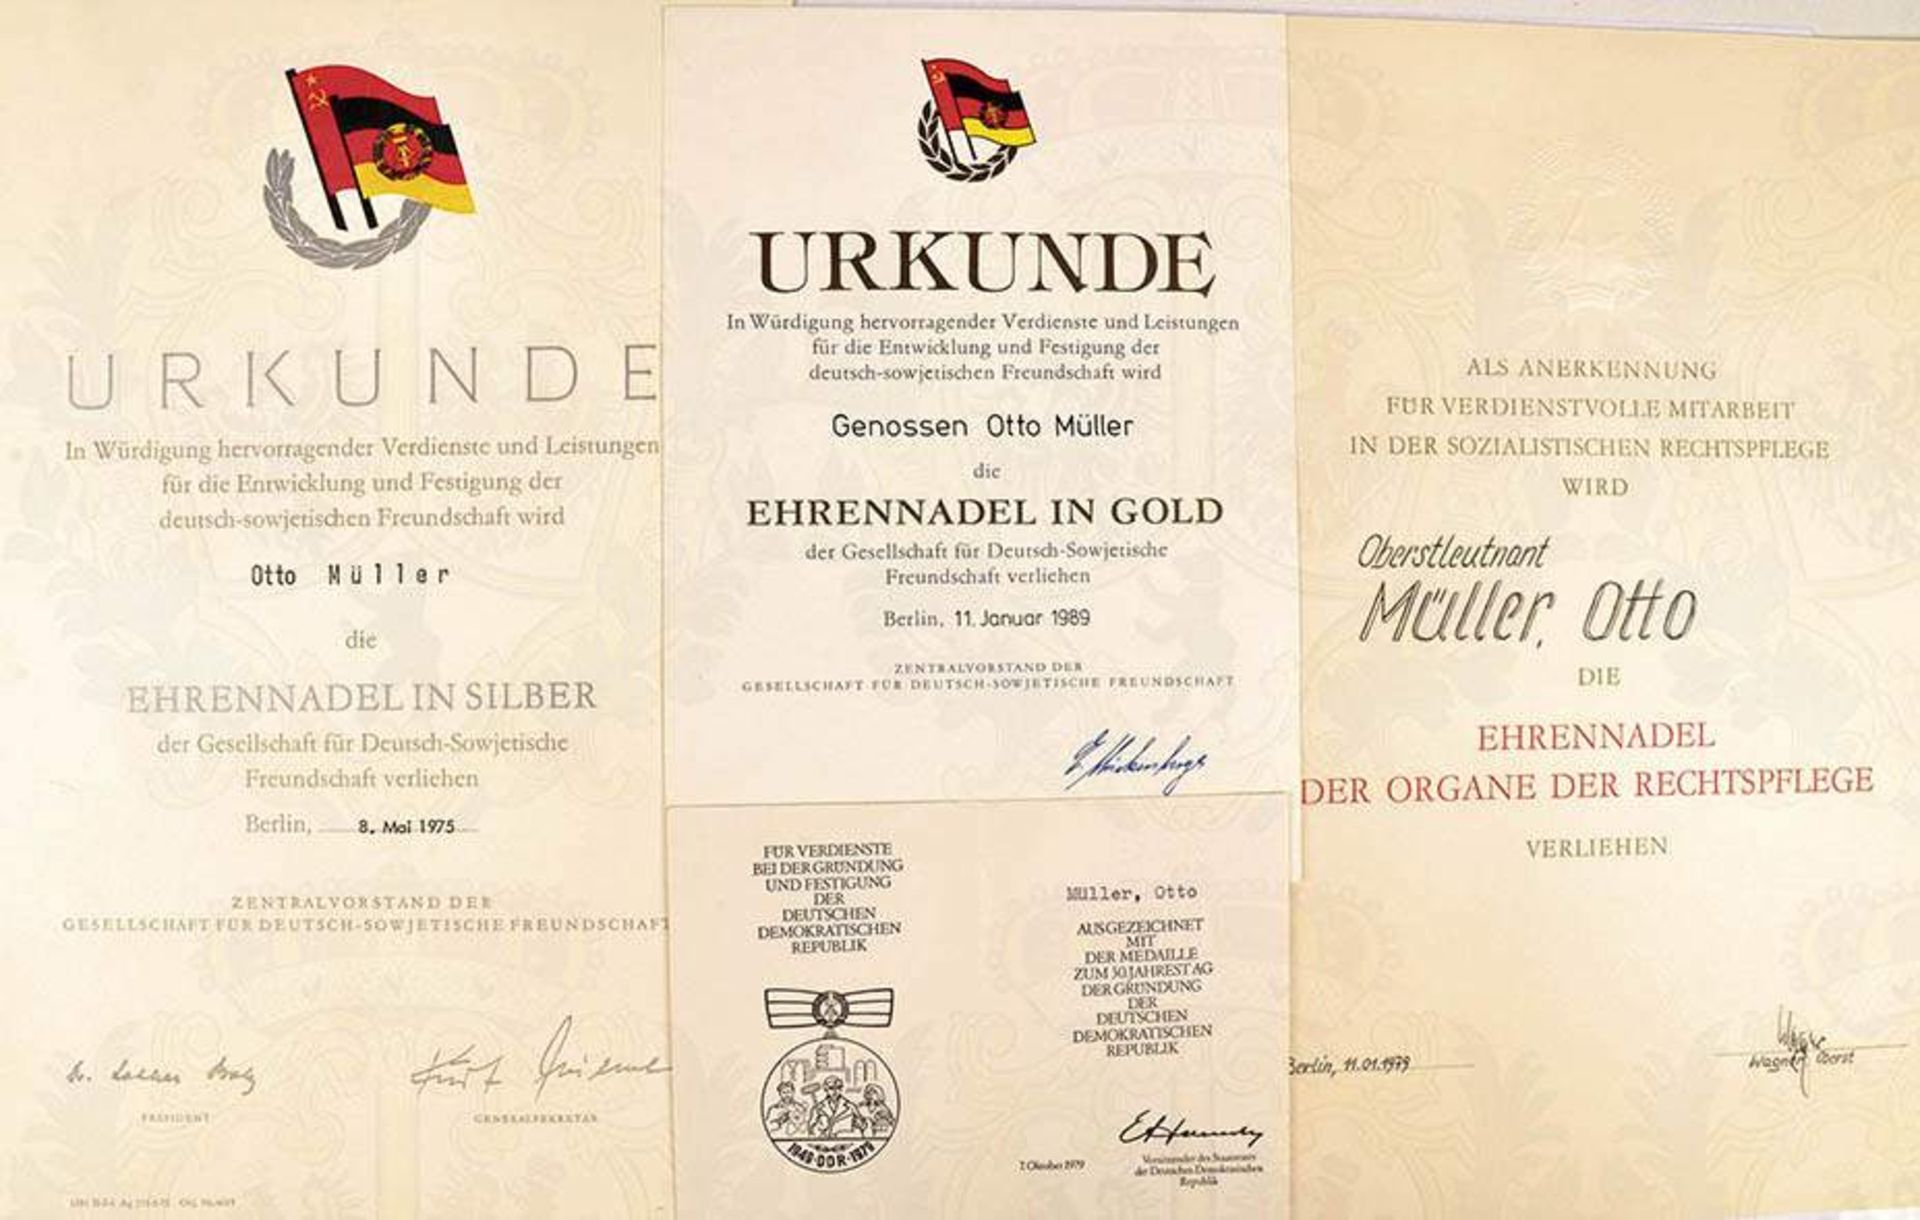 URKUNDENGRUPPE: Ehrennadel der Organe der Rechtspflege, 1979, OU Oberst, A 4; DSF-Ehrennadel